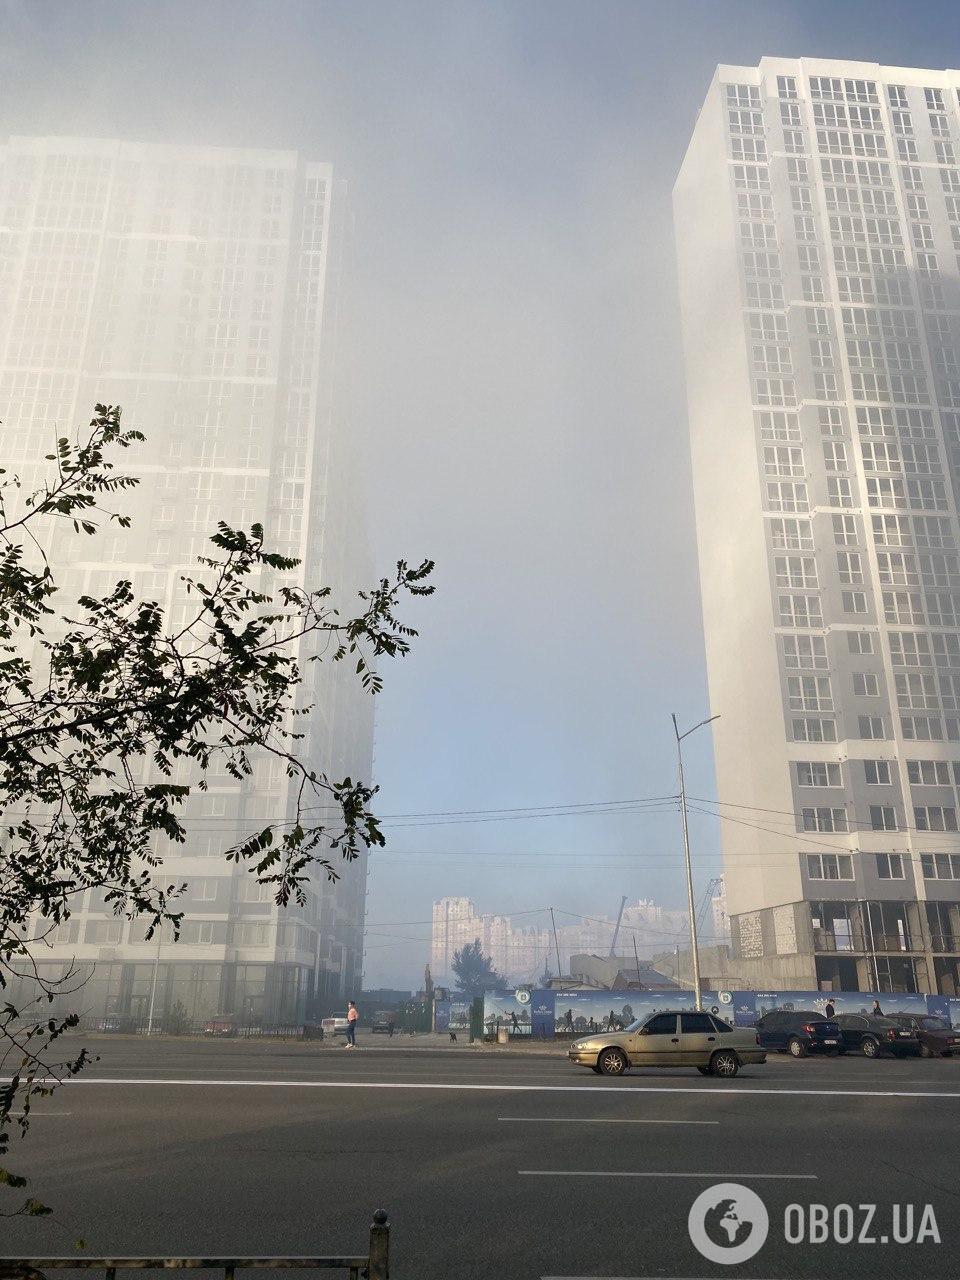 Район возле метро "Харьковская" также весь в тумане.